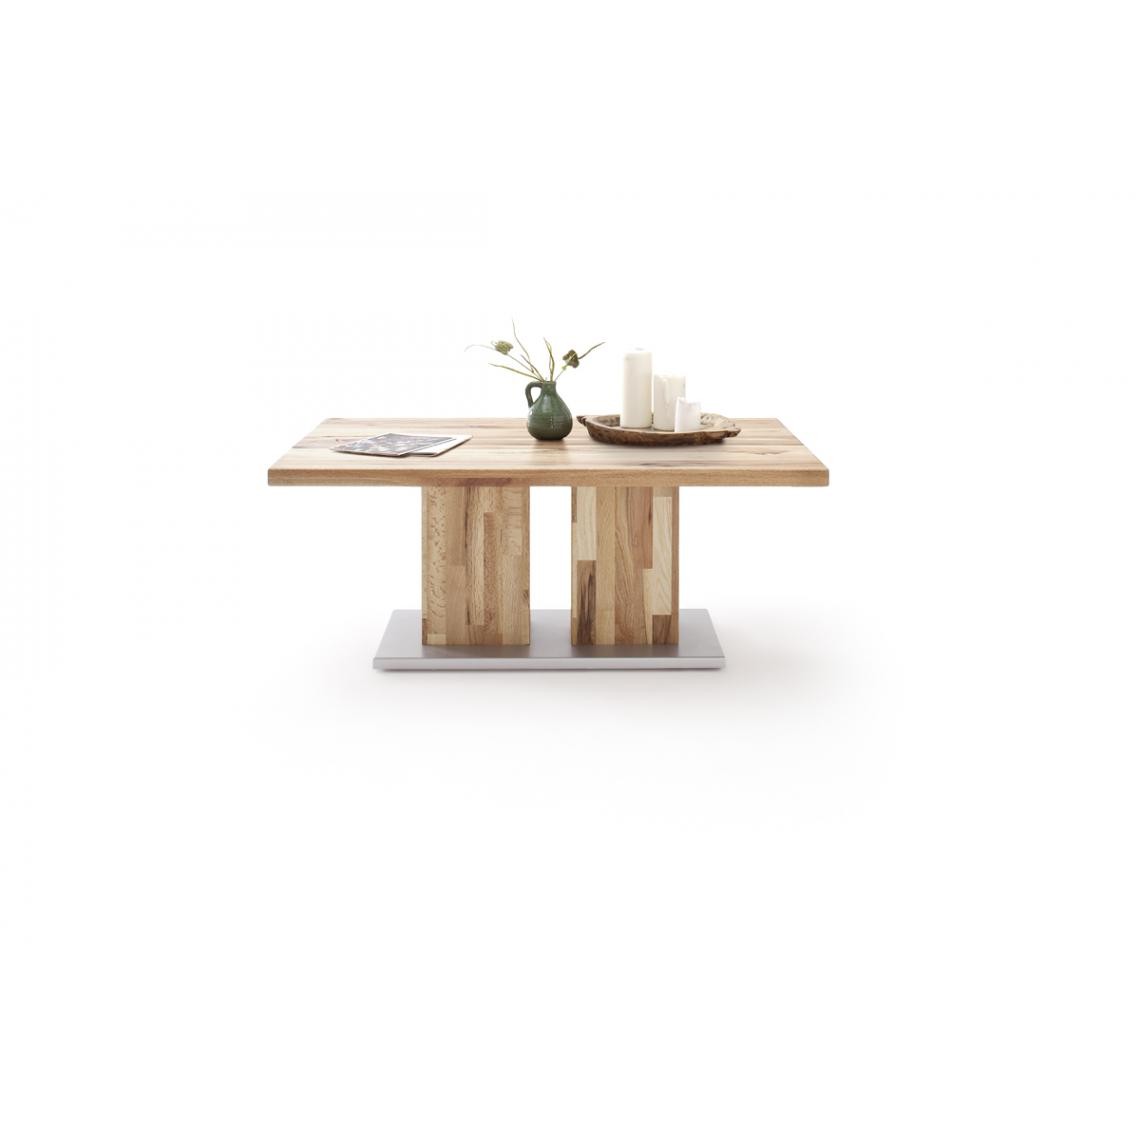 Pegane - Table basse en chêne massif huilé avec socle en métal argenté - L120 x H50 x P75 cm - Tables basses